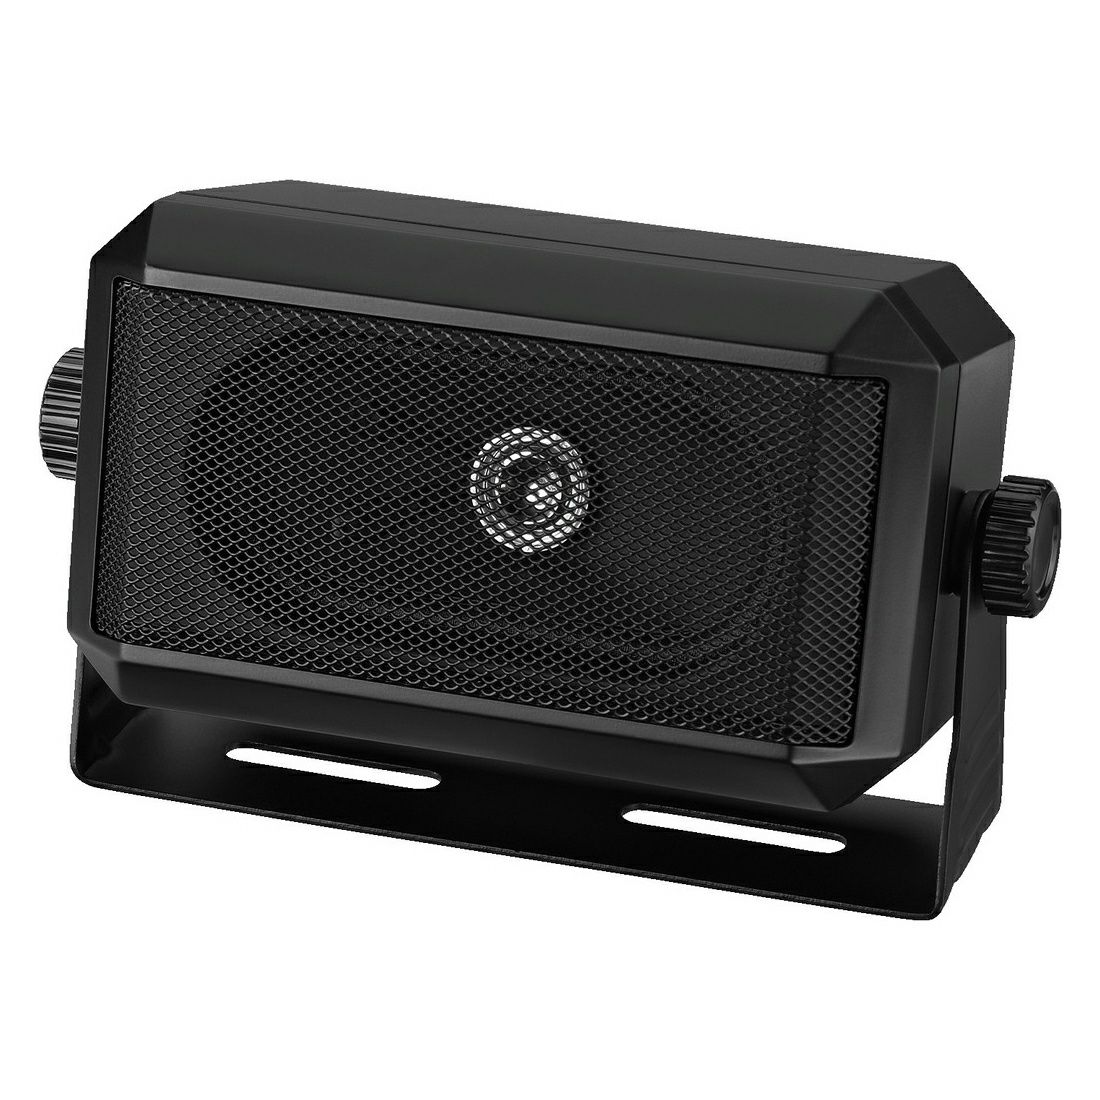 Monacor Extension speaker, 5 W, 6 Ω
4 Ω or 8 Ω operation
Black plastic